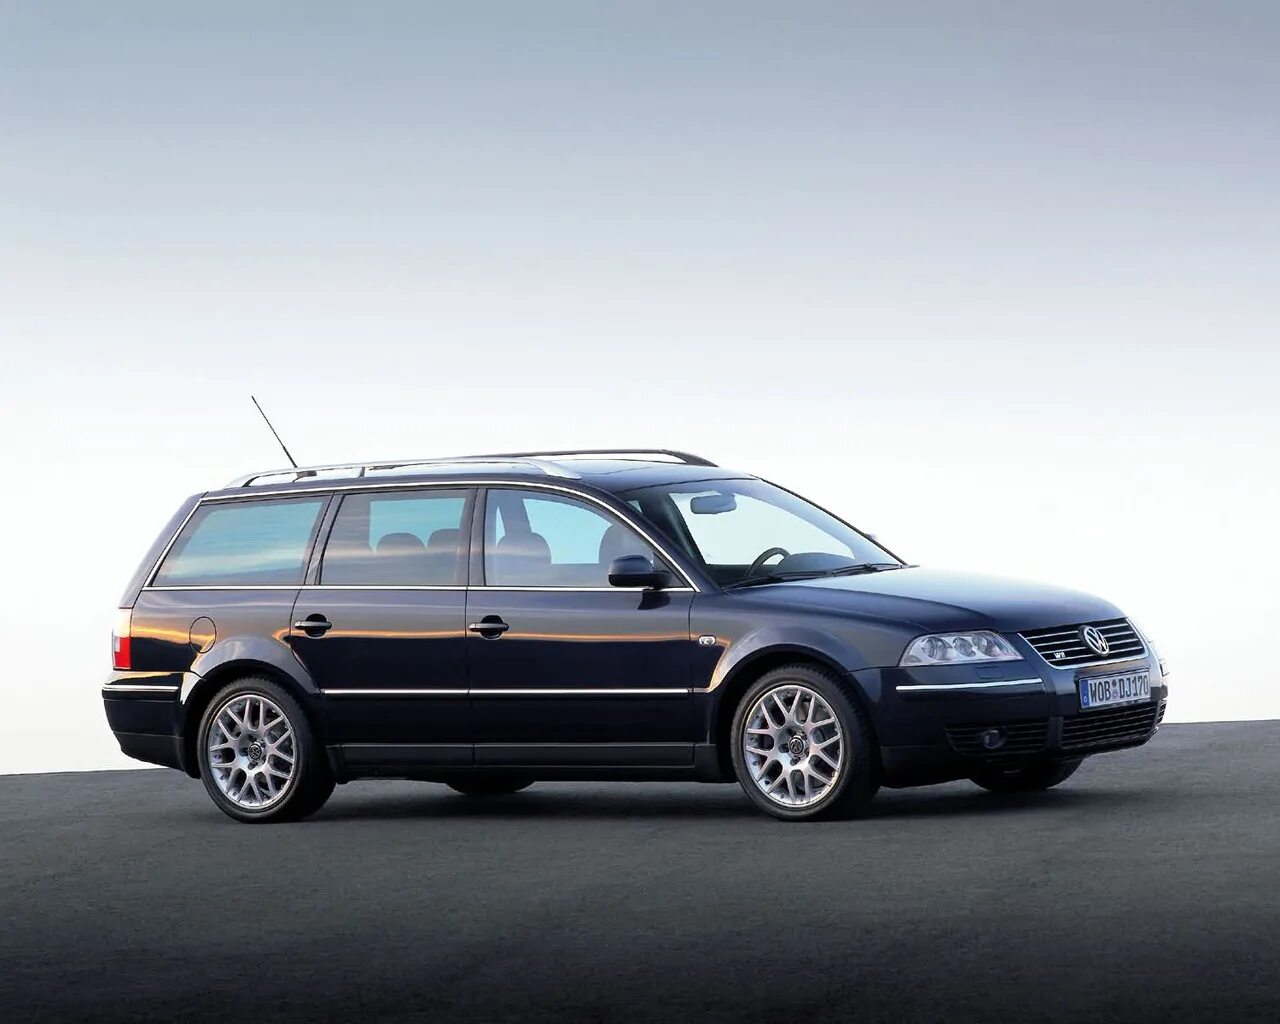 Volkswagen b5 универсал. Volkswagen Passat b5 универсал. Volkswagen Passat b5 2005 универсал. Volkswagen Passat b5 Wagon. Volkswagen Passat variant (3b5).